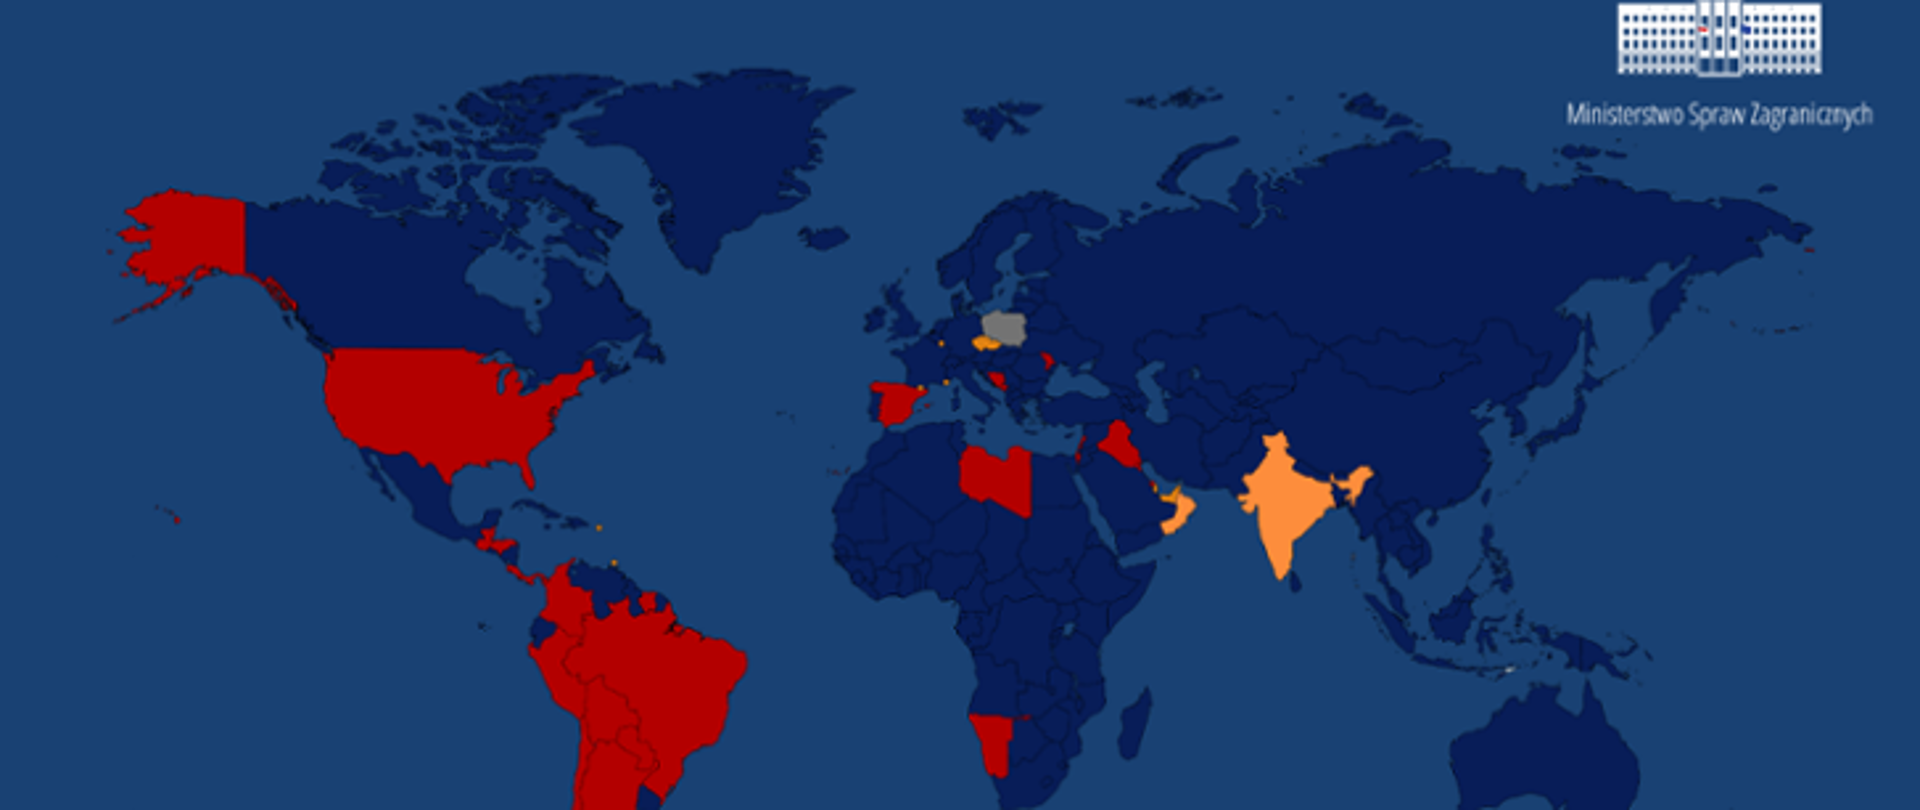 Mapa świata z zaznaczeniem krajów objętych zakazem w ruchu lotniczym.